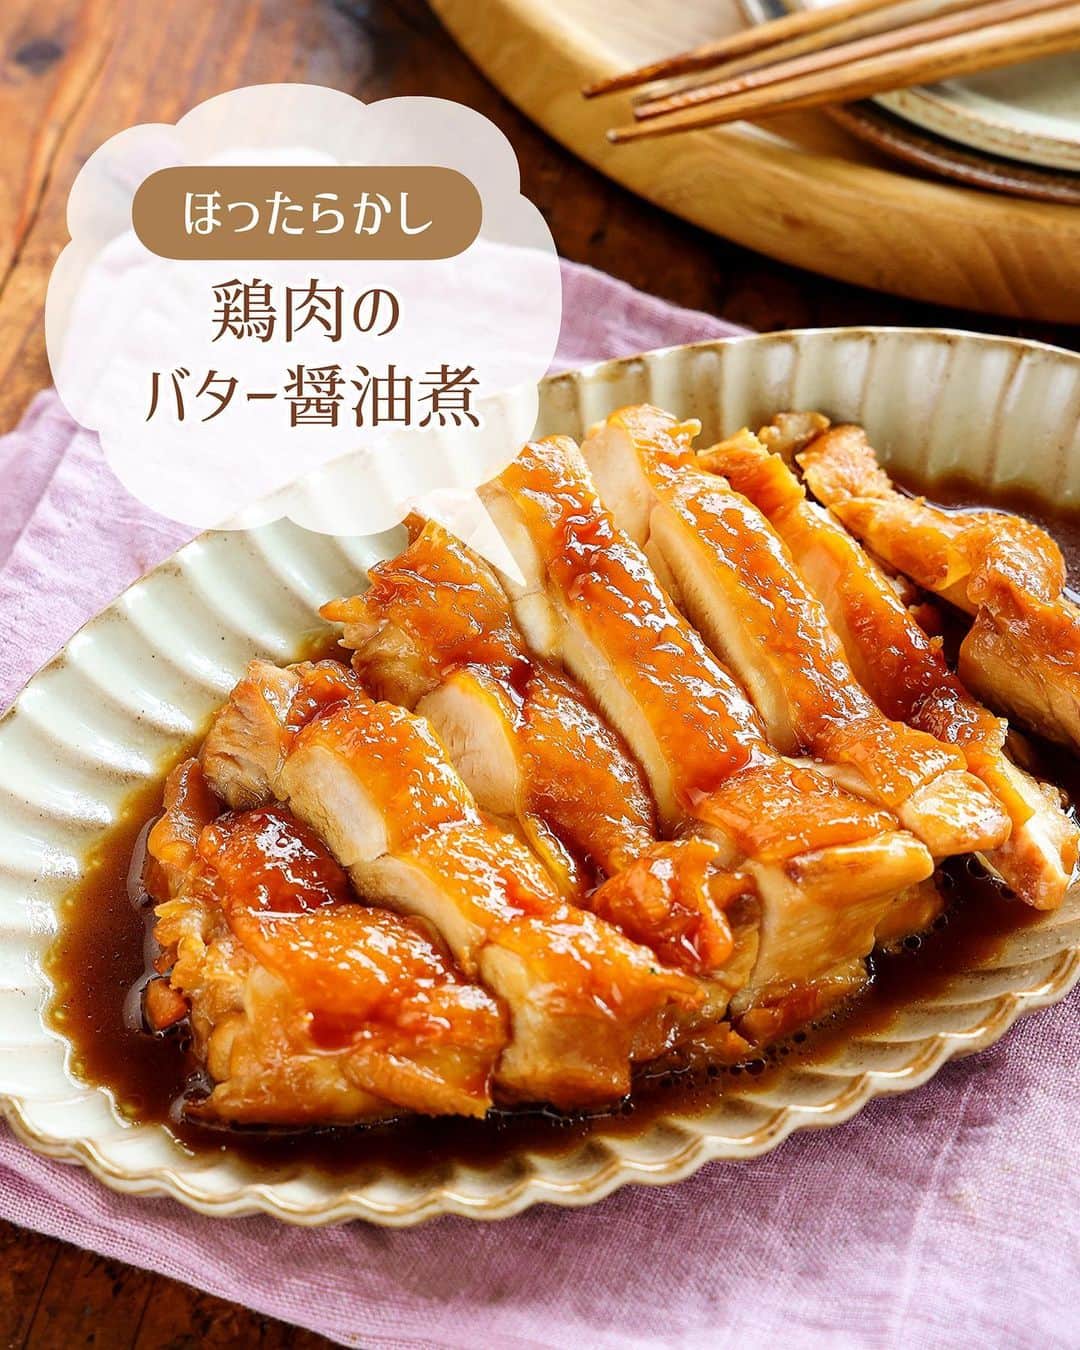 Mizuki【料理ブロガー・簡単レシピ】さんのインスタグラム写真 - (Mizuki【料理ブロガー・簡単レシピ】Instagram)「・#ウワサのお客さま レシピ📺 ⁡ ［#レシピ ］ ーーーーーーーーーーーーーーーーーー 鶏肉のほったらかしバターしょうゆ煮 ーーーーーーーーーーーーーーーーーー ⁡ ⁡ ⁡ おはようございます☺️ ⁡ 昨日は#ウワサのお客さま をご覧いただいて ありがとうございました！！ 笑うしかない場面も多々ございましたが😂 無事放送が終わってホッとしています🌸 ⁡ そして、たくさんの方にフォローしていただいて 本当にありがとうございます🙇‍♀️ 【簡単・時短・節約】をコンセプトに レシピを制作しておりますので 少しでもお役に立ちましたら幸いです🥰 ⁡ ⁡ さて、番組でご紹介したレシピを こちらにも一部掲載していきますね♩ まず最初は \ 鶏肉のほったらかしバターしょうゆ煮 / ⁡ お鍋に全部入れて ''いじらず触らず煮るだけ''の 超簡単レシピです😋💕 ⁡ ⁡ ⁡ ⋱⋰ ⋱⋰ ⋱⋰ ⋱⋰ ⋱⋰ ⋱⋰ ⋱⋰ 📍簡単・時短・節約レシピ更新中  Threadsもこちらから▼ @mizuki_31cafe ⁡ 📍謎の暮らし＆変なライブ垢 @mizuki_kurashi ⋱⋰ ⋱⋰ ⋱⋰ ⋱⋰ ⋱⋰ ⋱⋰ ⋱⋰ ⁡ ⁡ ⁡ ＿＿＿＿＿＿＿＿＿＿＿＿＿＿＿＿＿＿＿ 【2人分】 鶏もも肉…大1枚(300g) ●酒…80ml ●しょうゆ…大2 ●砂糖…大1 ●バター…5g   1.小鍋に●を入れ、鶏肉の皮目を下にして加え、中火にかける。煮立ったら蓋を少しずらしてのせ、弱めの中火で12分煮る。 2.火を止め、そのまま5分置き、食べやすい大きさに切る。 ￣￣￣￣￣￣￣￣￣￣￣￣￣￣￣￣￣￣￣ ⁡ ⁡ 《ポイント》 ♦︎鶏肉がぴったりおさまるサイズ(16cmが最適)の鍋に入れるだけ！いじらず触らず煮るだけで、しっかり味が染みます♩ ♦︎火を止めて5分置くことで肉汁が閉じ込められます♩ ⁡ ⁡ ⁡ ⁡ ⁡ ⁡ ⋱⋰ ⋱⋰ ⋱⋰ ⋱⋰ ⋱⋰ ⋱⋰ ⋱⋰  愛用している調理器具・器など   #楽天ROOMに載せてます ‎𐩢𐩺  (ハイライトから飛べます🕊️) ⋱⋰ ⋱⋰ ⋱⋰ ⋱⋰ ⋱⋰ ⋱⋰ ⋱⋰ ⁡ ⁡ ⁡ ⁡ ⁡ ⁡ ✼••┈┈┈┈┈••✼••┈┈┈┈┈••✼ 今日のごはんこれに決まり！ ‎𓊆#Mizukiのレシピノート 500品𓊇 ✼••┈┈┈┈┈••✼••┈┈┈┈┈••✼ ⁡ ˗ˏˋ おかげさまで25万部突破 ˎˊ˗ 料理レシピ本大賞準大賞を受賞しました✨ ⁡ 6000点の中からレシピを厳選し まさかの【500レシピ掲載】 肉や魚のメインおかずはもちろん 副菜、丼、麺、スープ、お菓子 ハレの日のレシピ、鍋のレシピまで 全てこの一冊で完結 𓌉◯𓇋 (全国の書店・ネット書店で発売中) ⁡ ⁡ ⁡ ⁡ ⁡ ⁡ #鶏肉レシピ #ほったらかし #ほったらかしレシピ #速攻料理 #ほったらかし料理 #鶏肉のほったらかし煮 #節約料理  #簡単料理  #時短料理 #mizukiレシピ  #時短レシピ #節約レシピ #簡単レシピ」9月23日 6時55分 - mizuki_31cafe